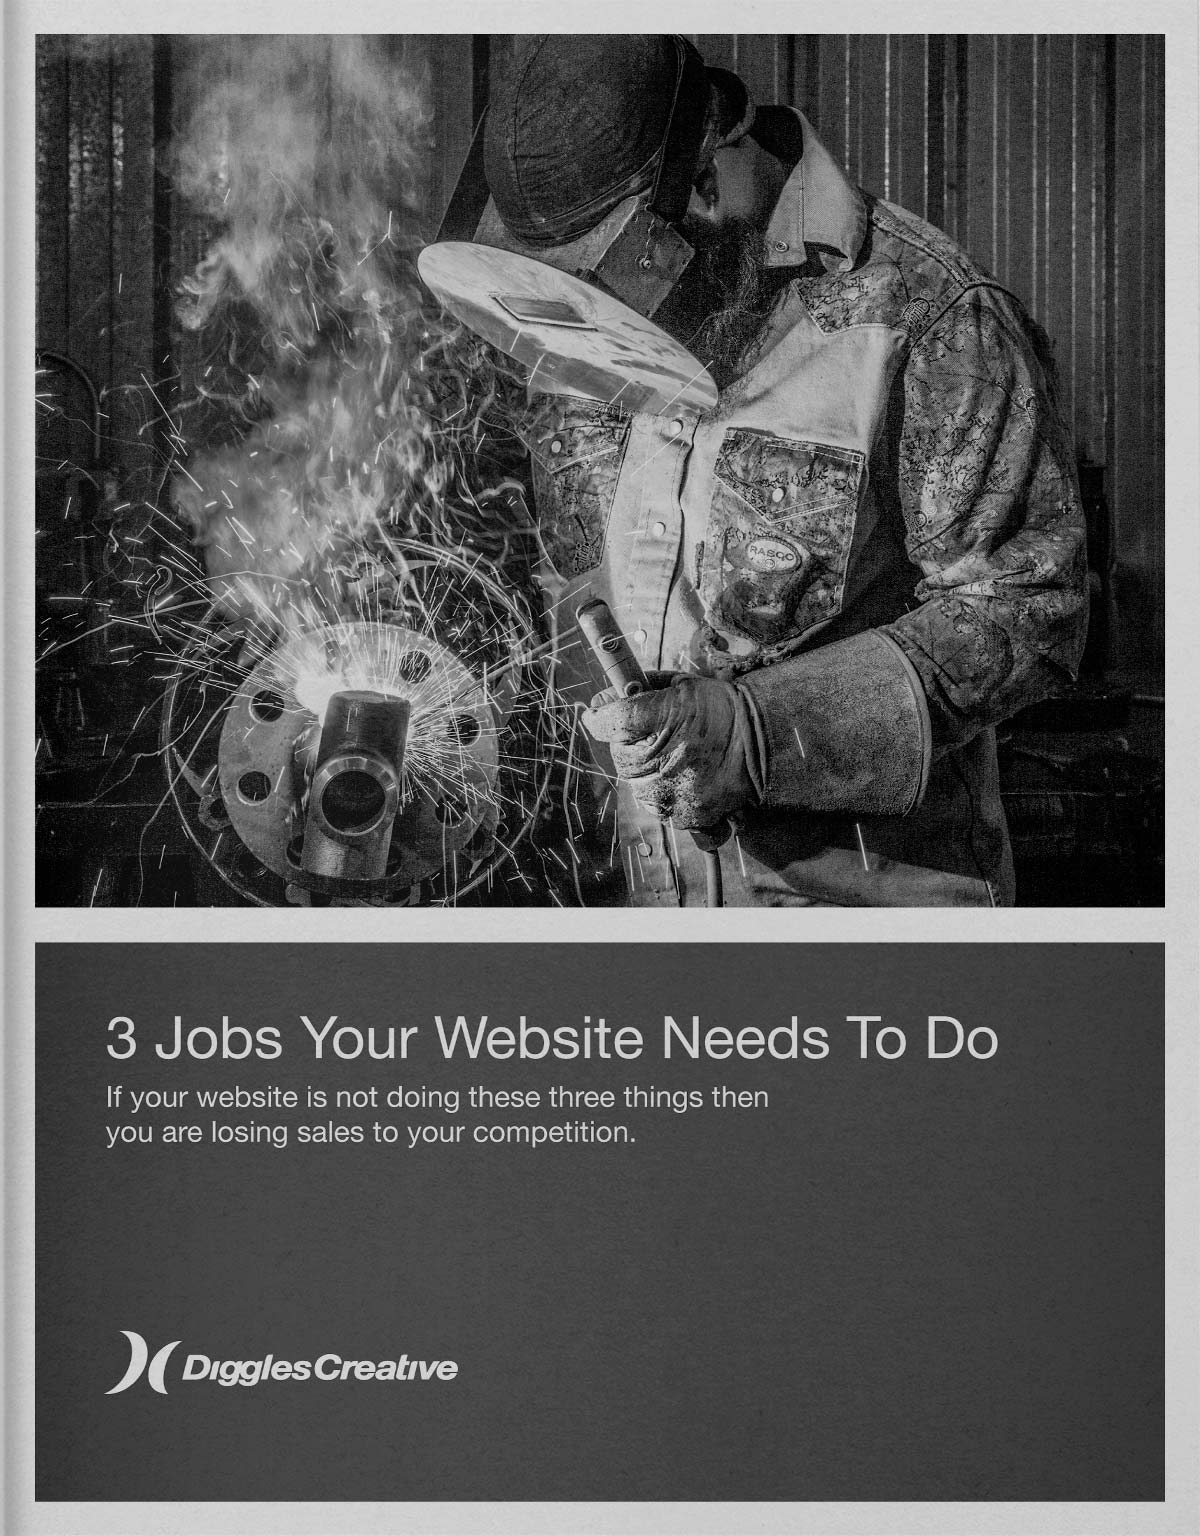 Ebook - 3 Jobs Your Website Needs to Do